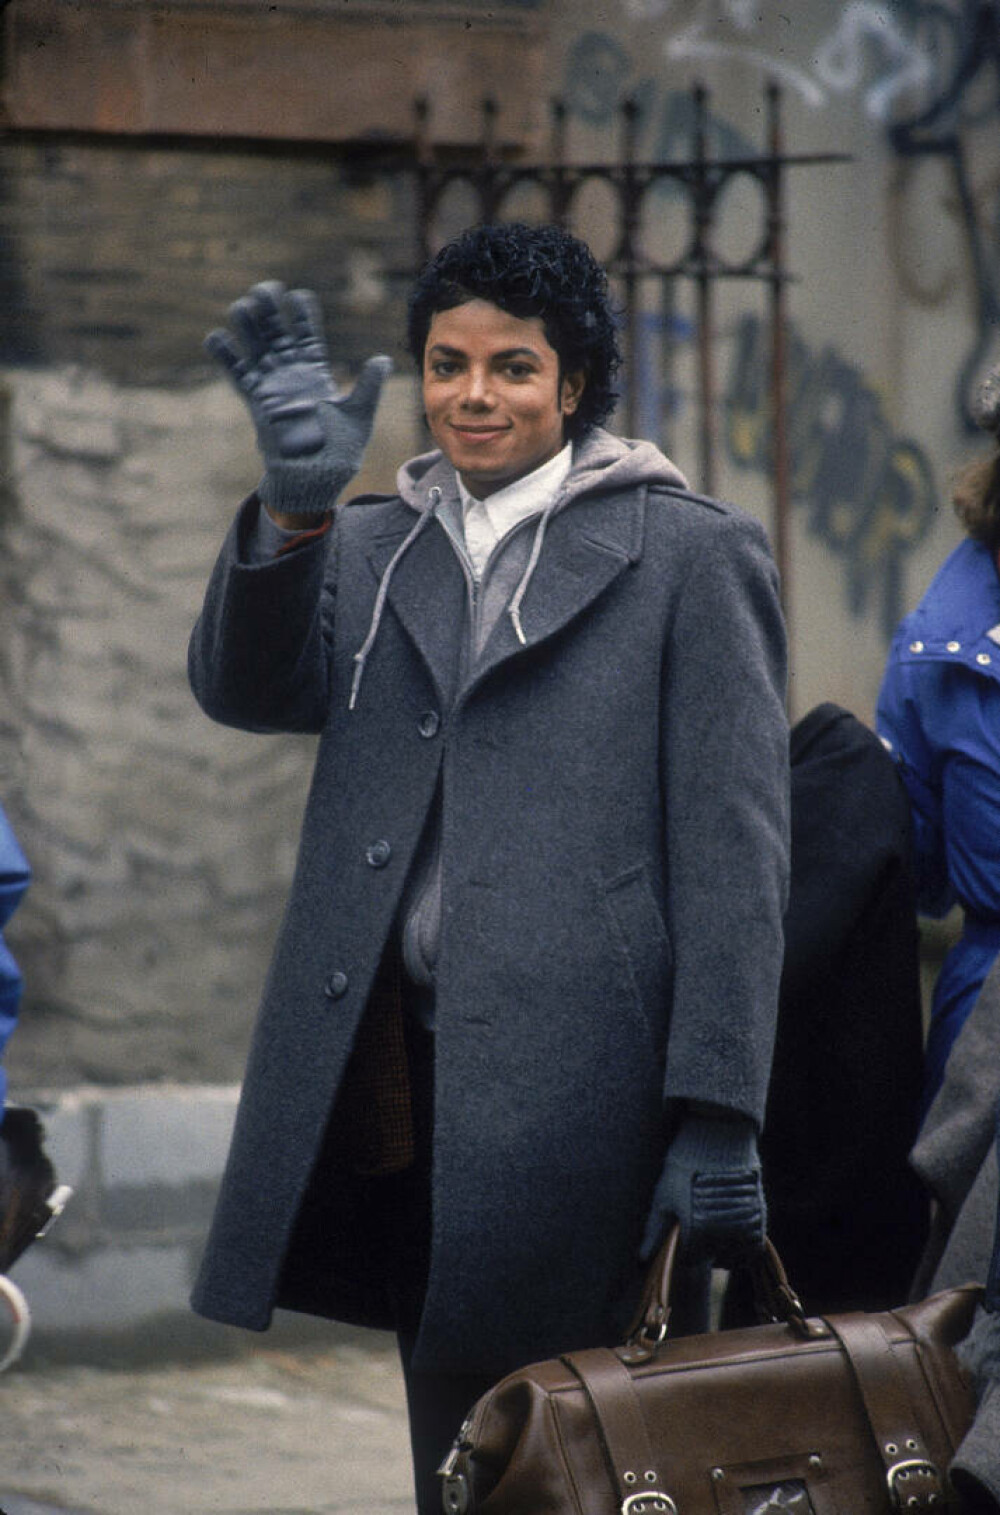 Imagini de colecție cu Michael Jackson. Regele muzicii pop ar fi împlinit 65 de ani | GALERIE FOTO - Imaginea 48